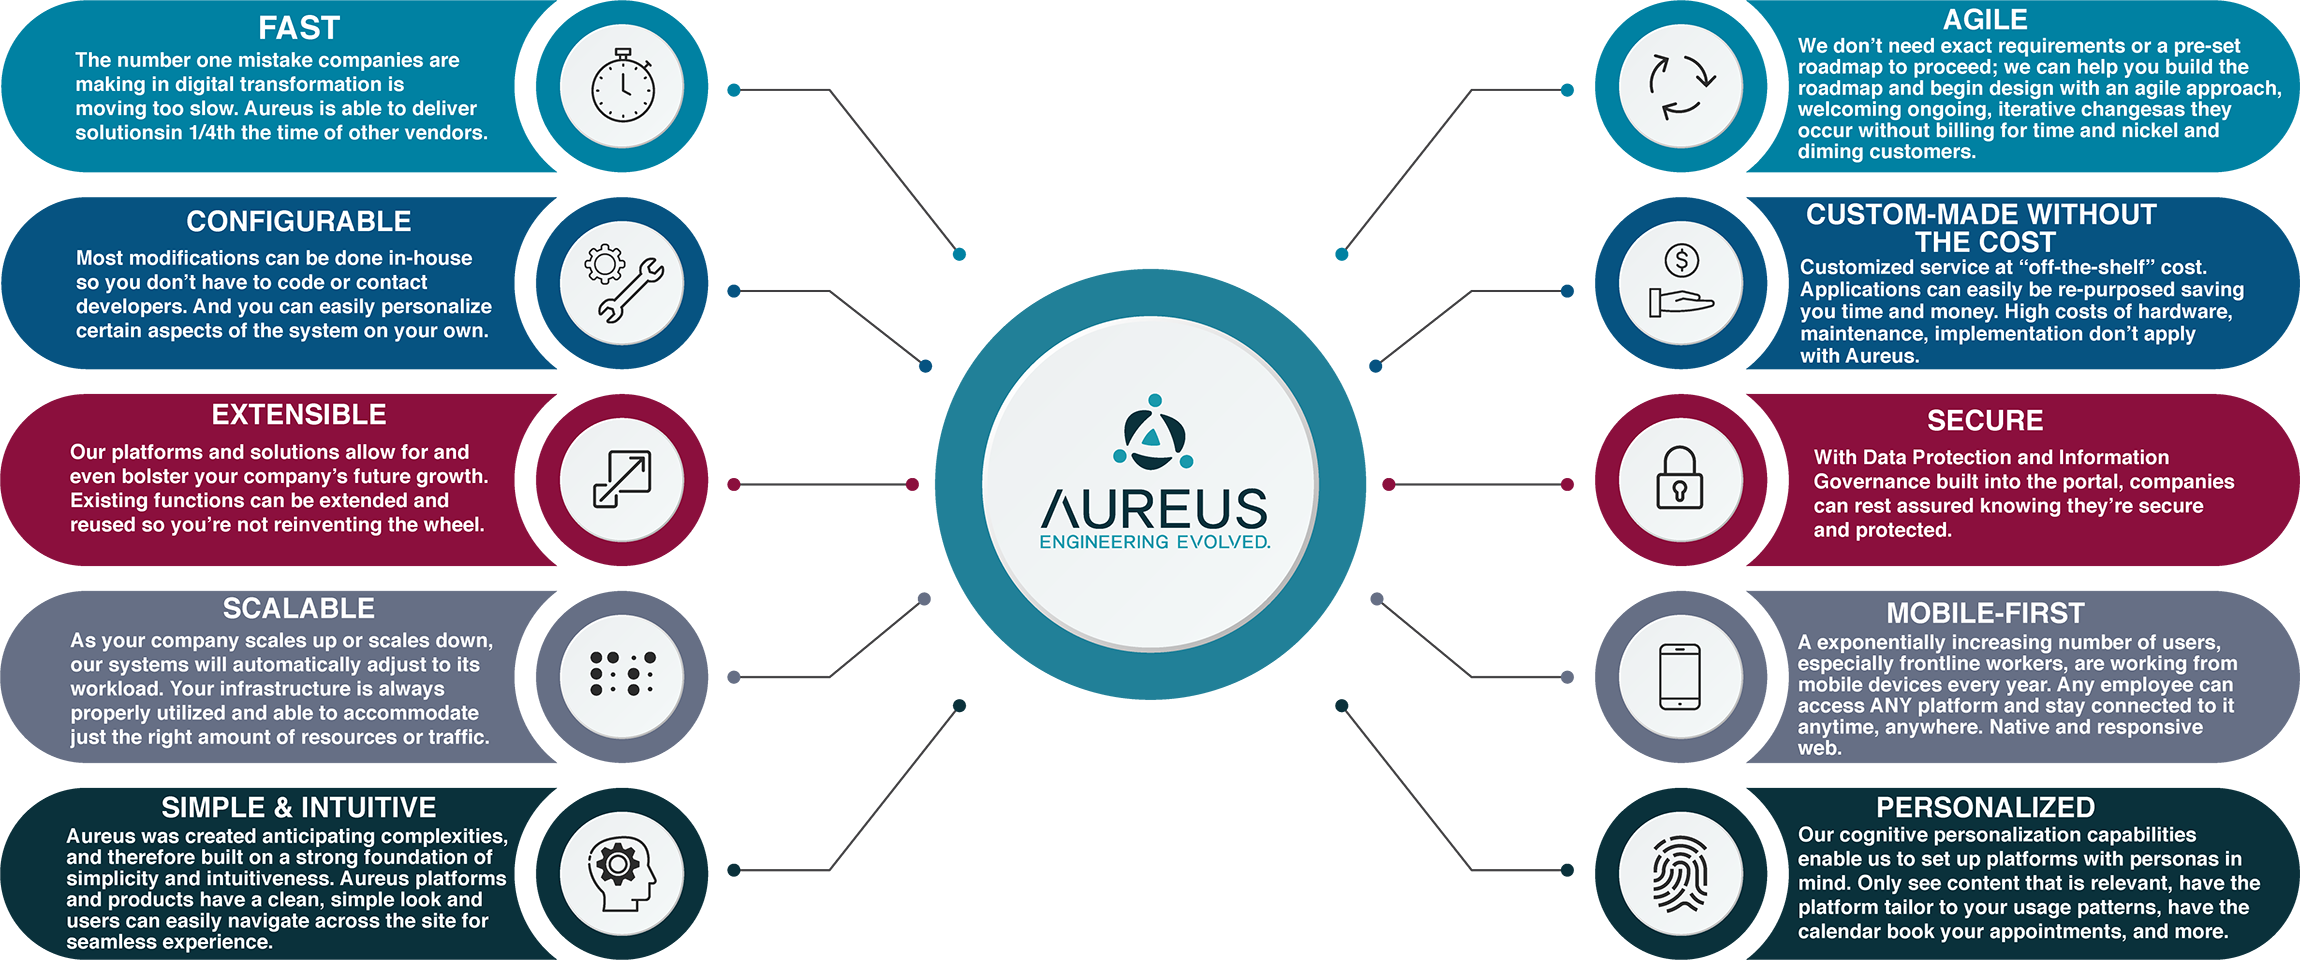 Aureus-Capabilities-Overview